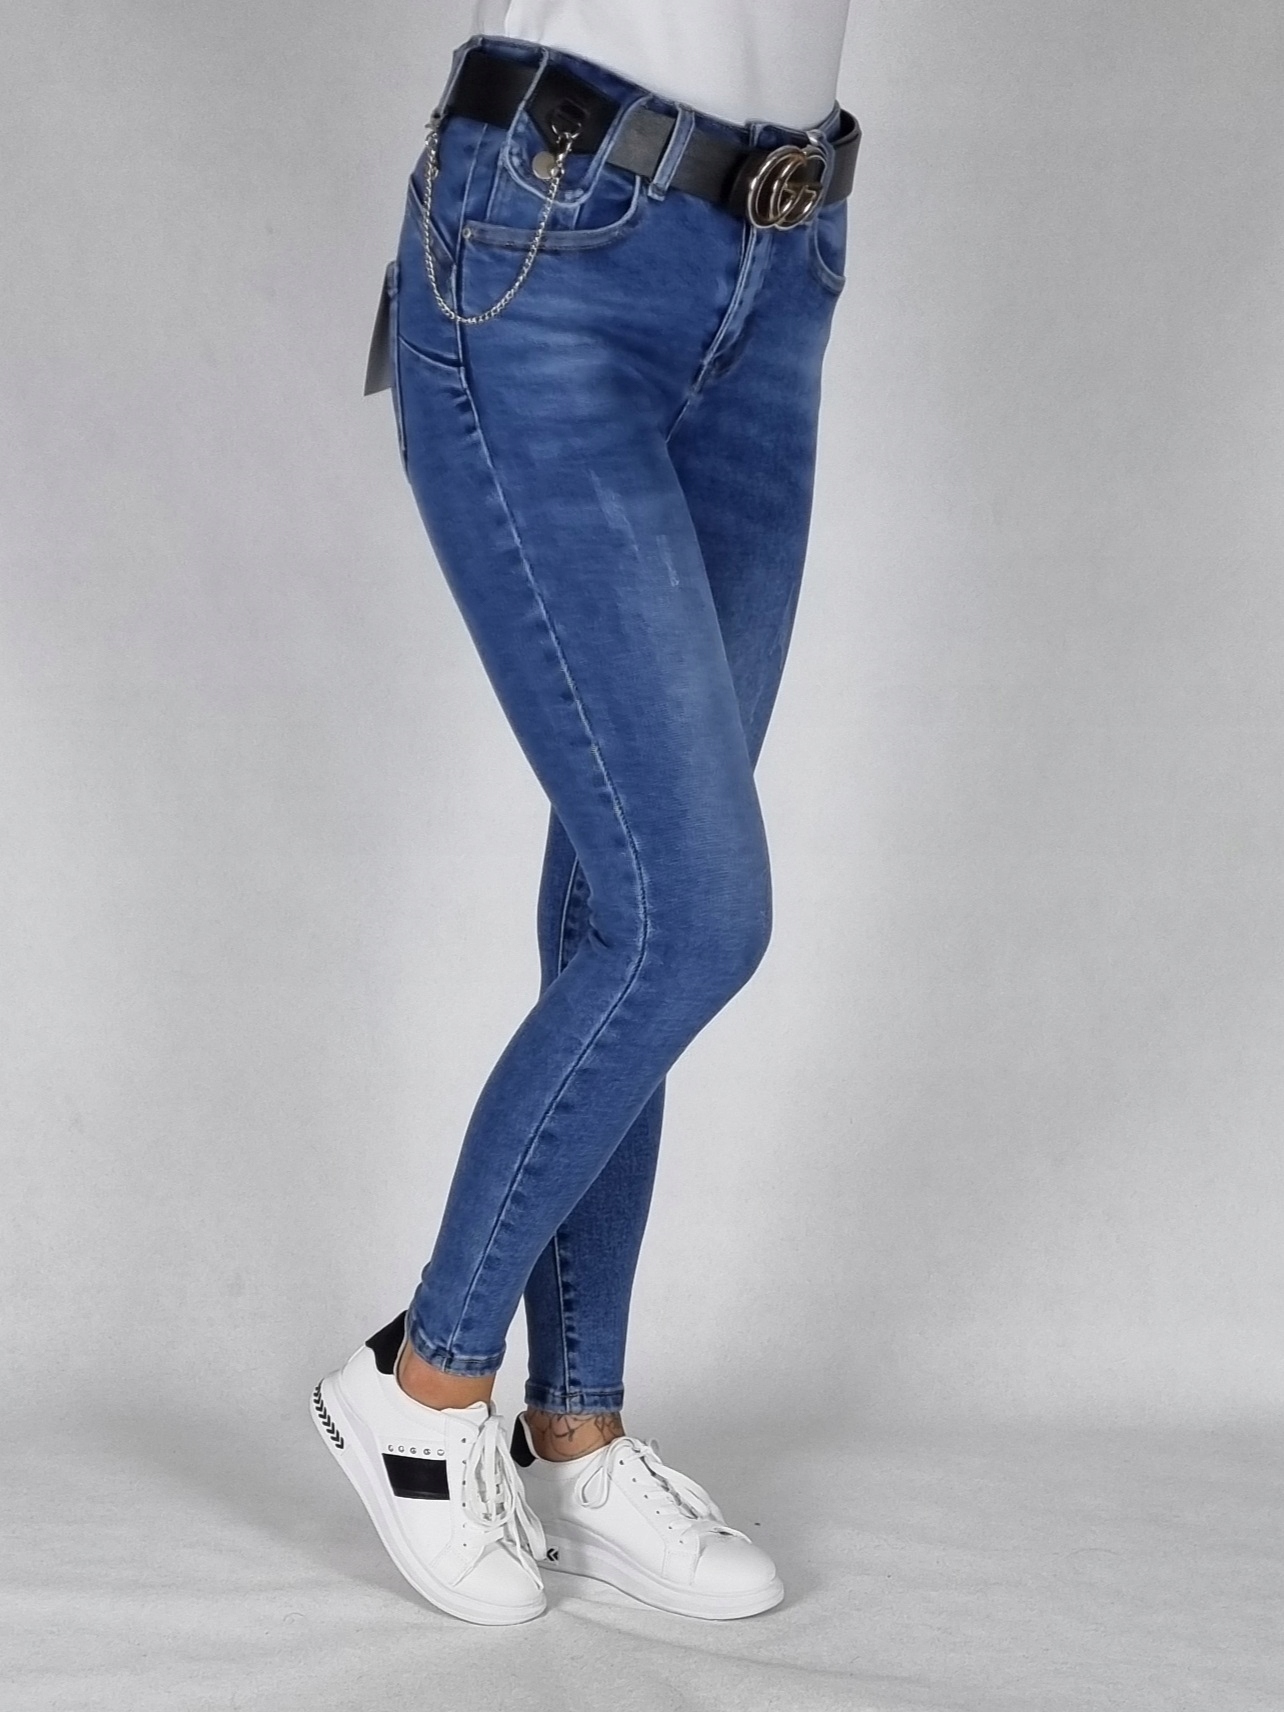 M. SARA джинсовые брюки с потертостями размер 27 Leg Length long